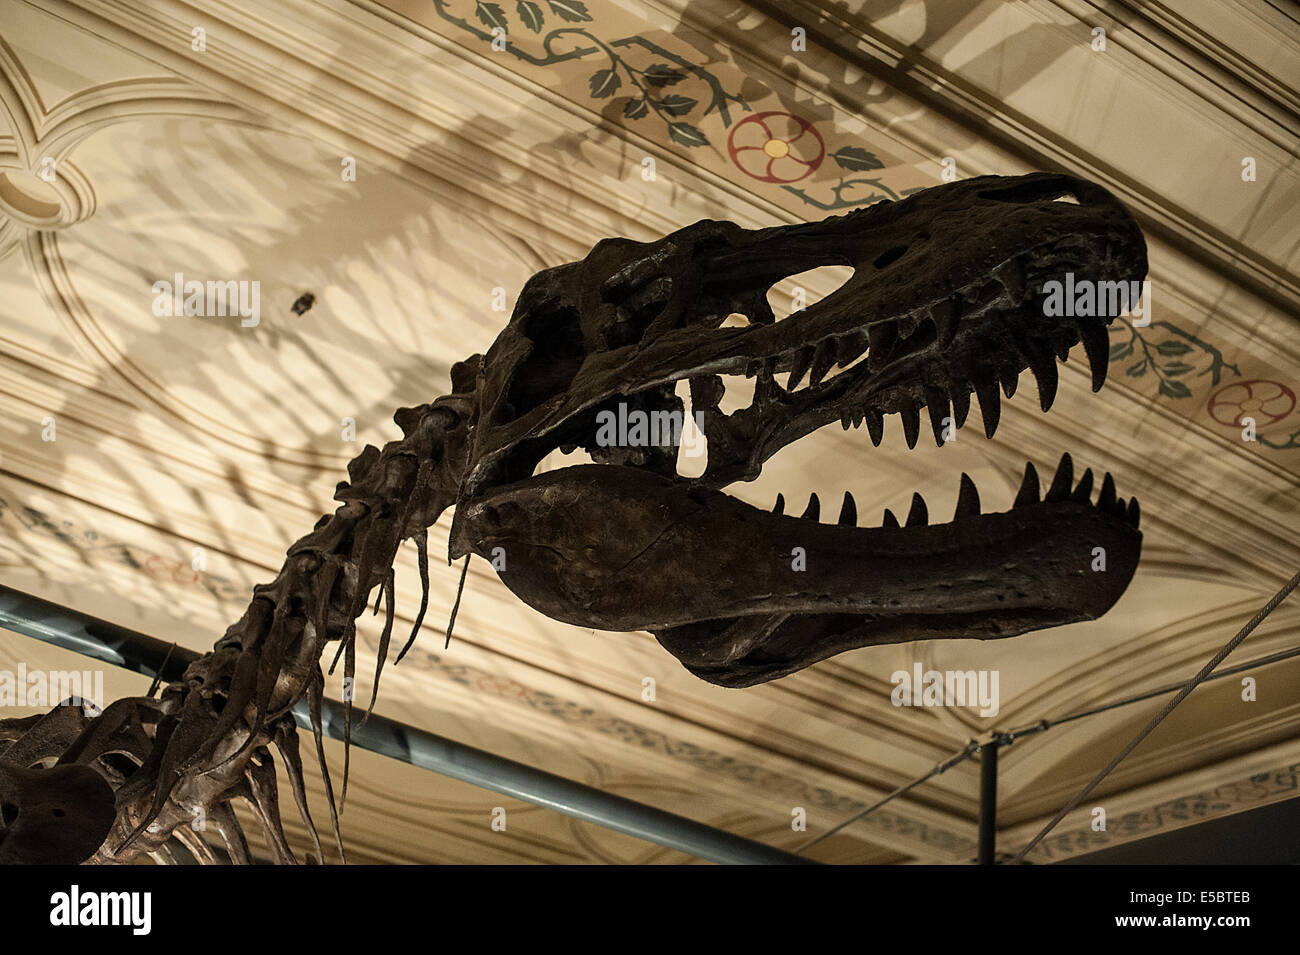 Squelette de l'Albertosaurus sarcophagus, saurid théropode qui vivait dans l'ouest de l'Amérique du Nord pendant le Crétacé tardif Banque D'Images